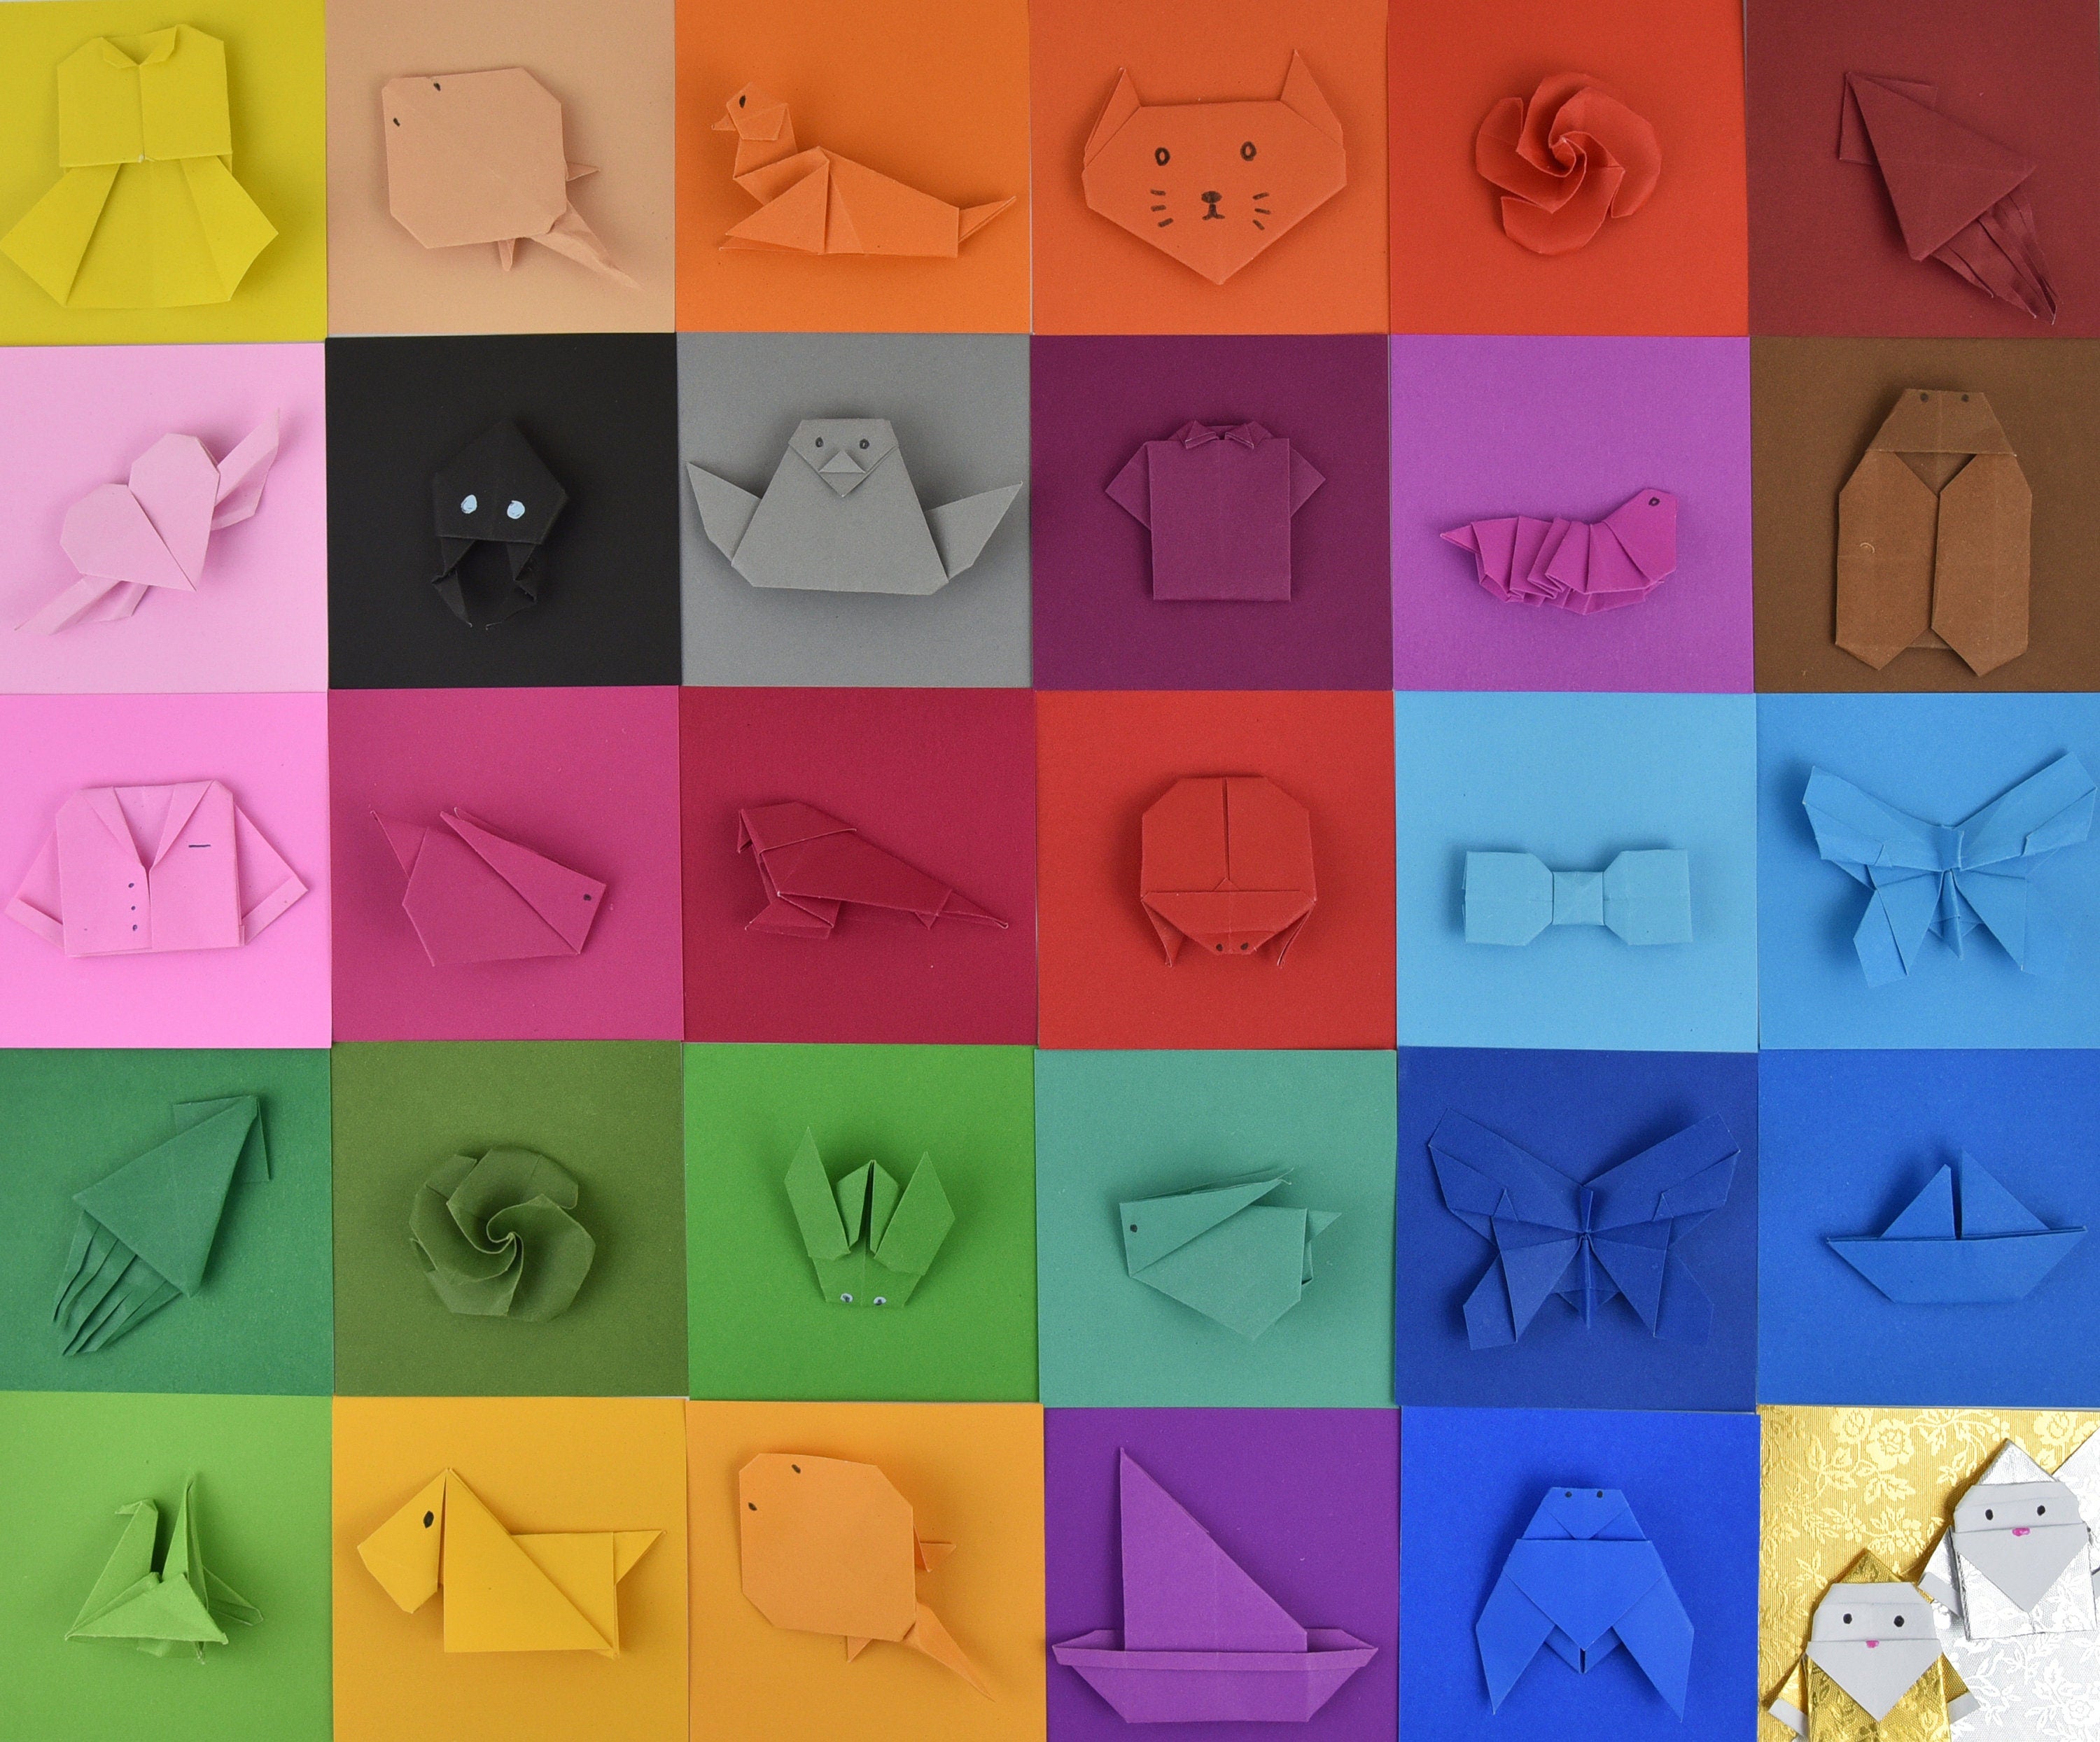 100 fogli di carta origami - 3x3 pollici - Confezione di carta quadrata per piegare, gru origami e decorazioni - S06